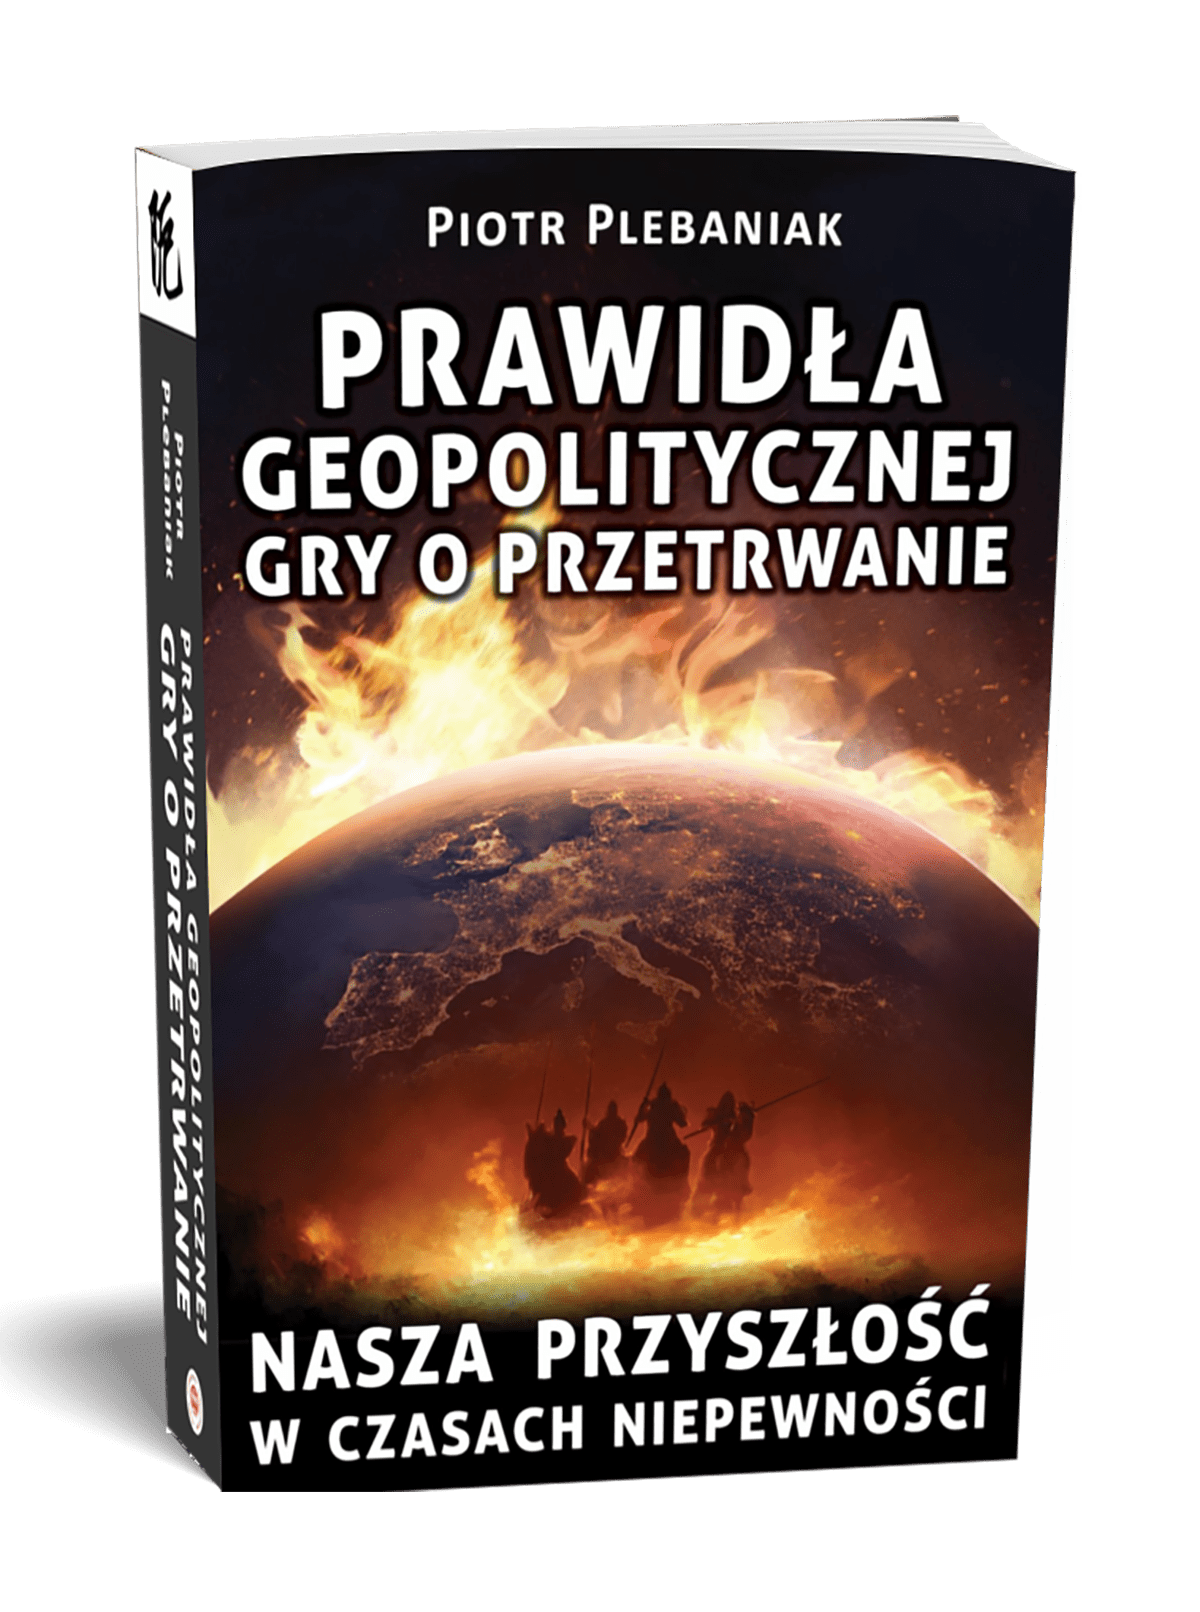 Książka Piotr Plebaniak, Prawidła geopolitycznej gry o przetrwanie, gdzie kupić - lista księgarni (poniżej)